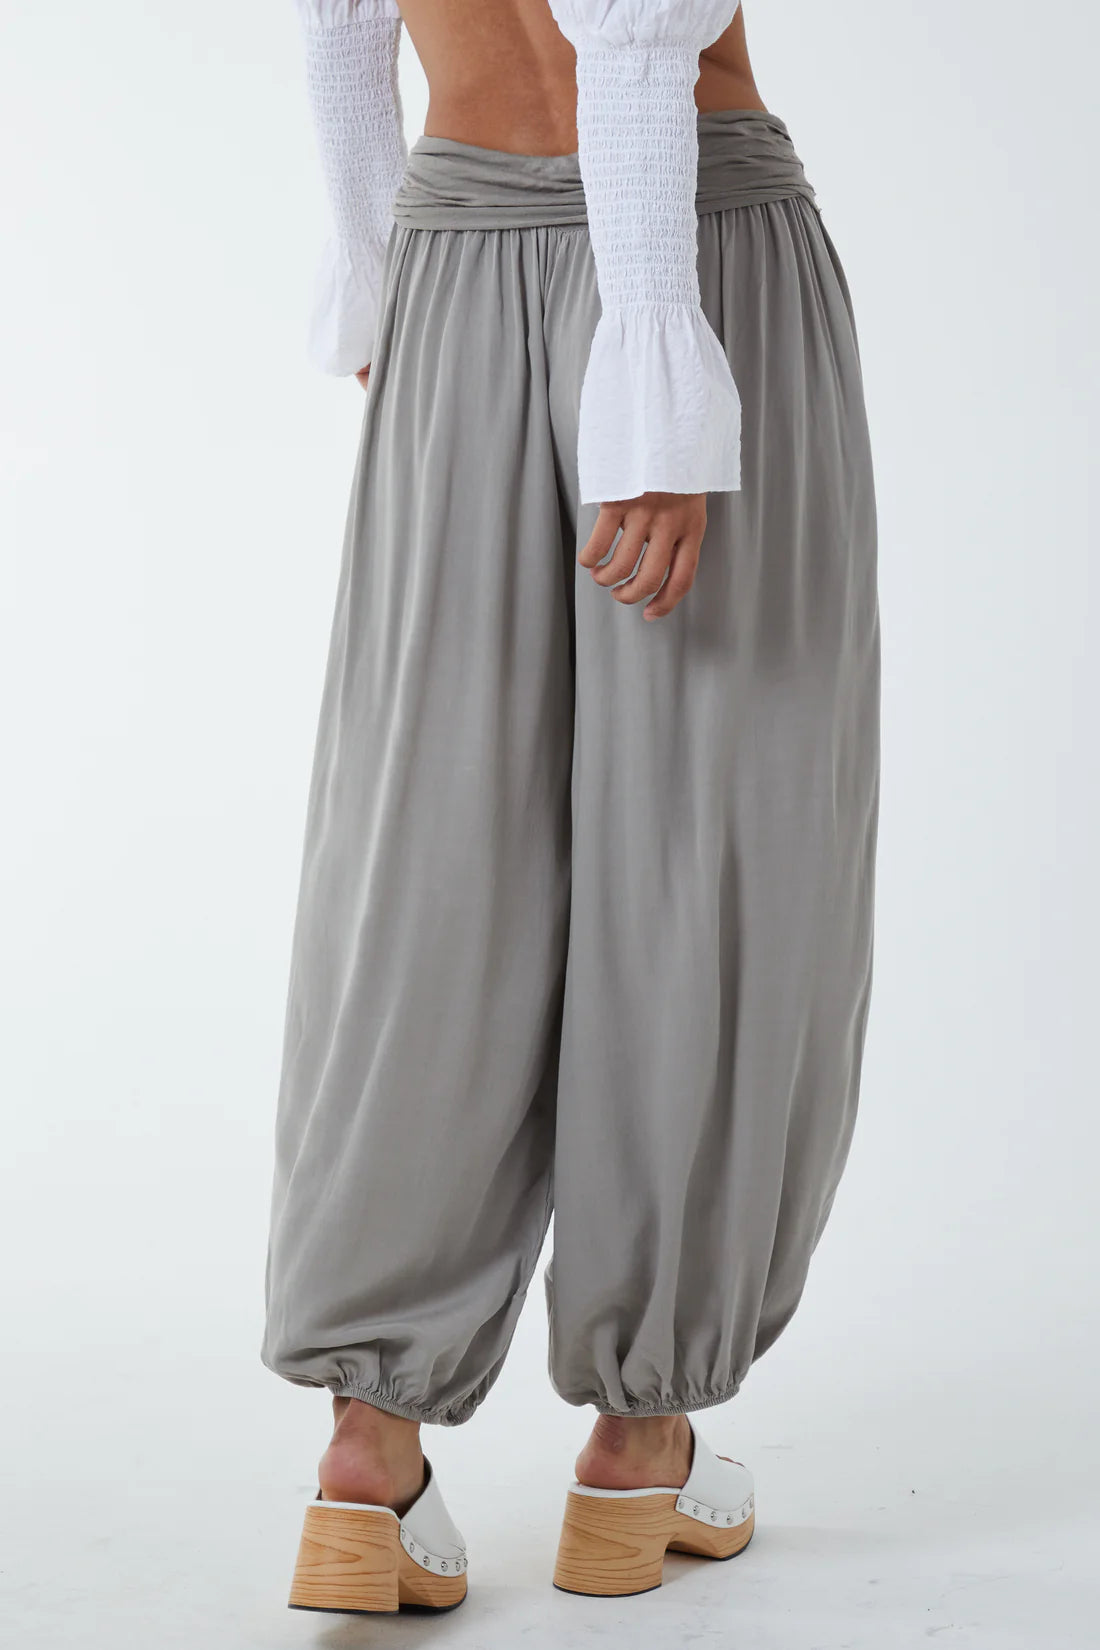 Womens Elastic Waist Cotton Linen Harem Pants Ladies Baggy Trousers Plus  Size UK | eBay